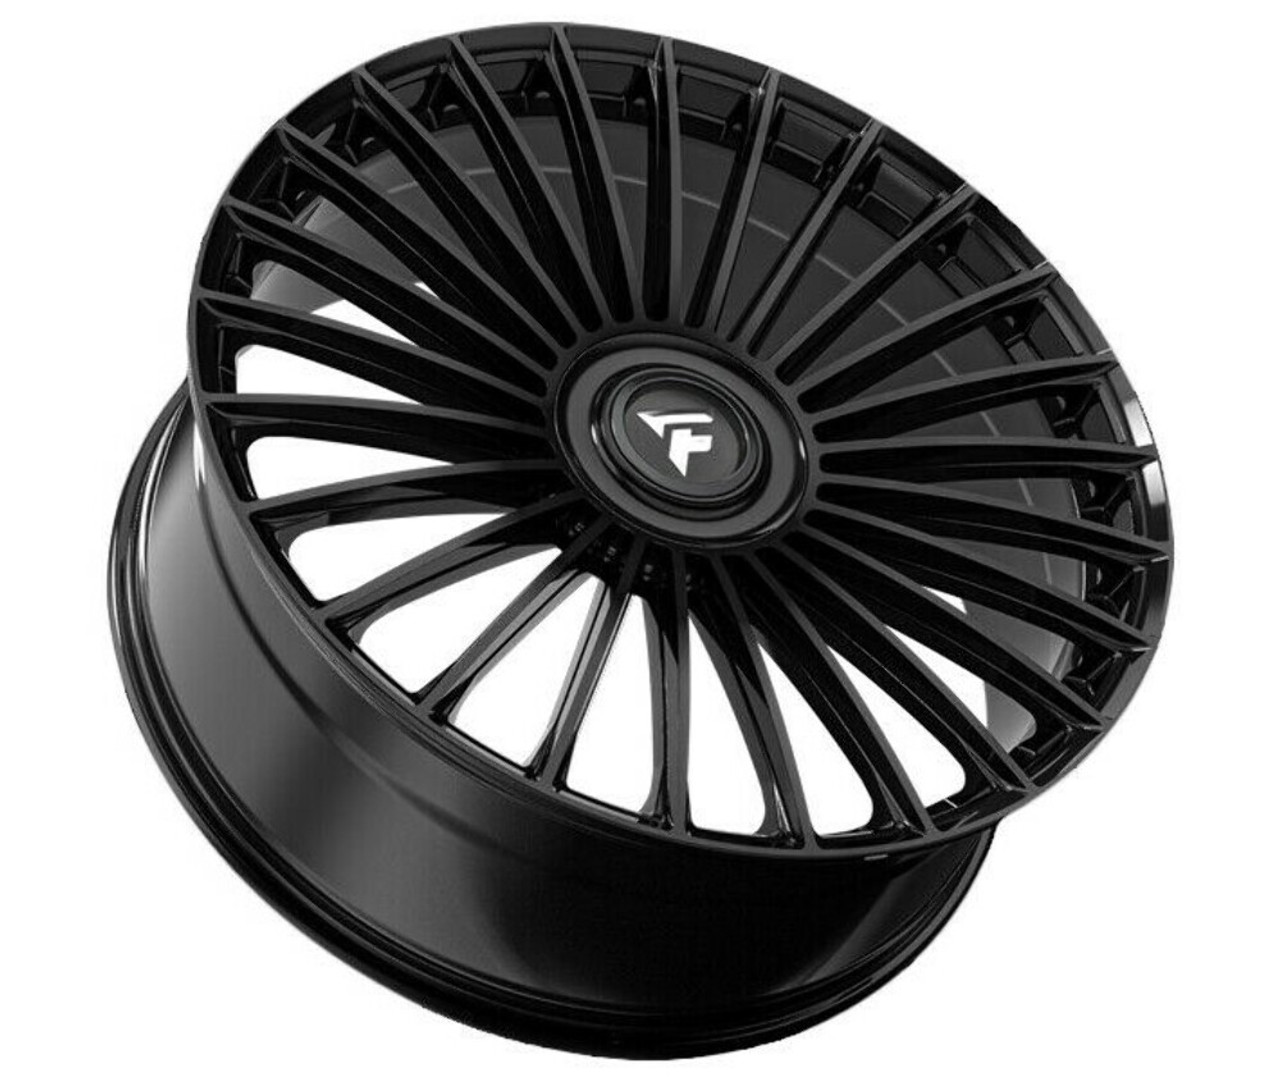 22" Fittipaldi Street FS370B Gloss Black 22x9.5 Wheel 5x115 5x120 15mm Rim